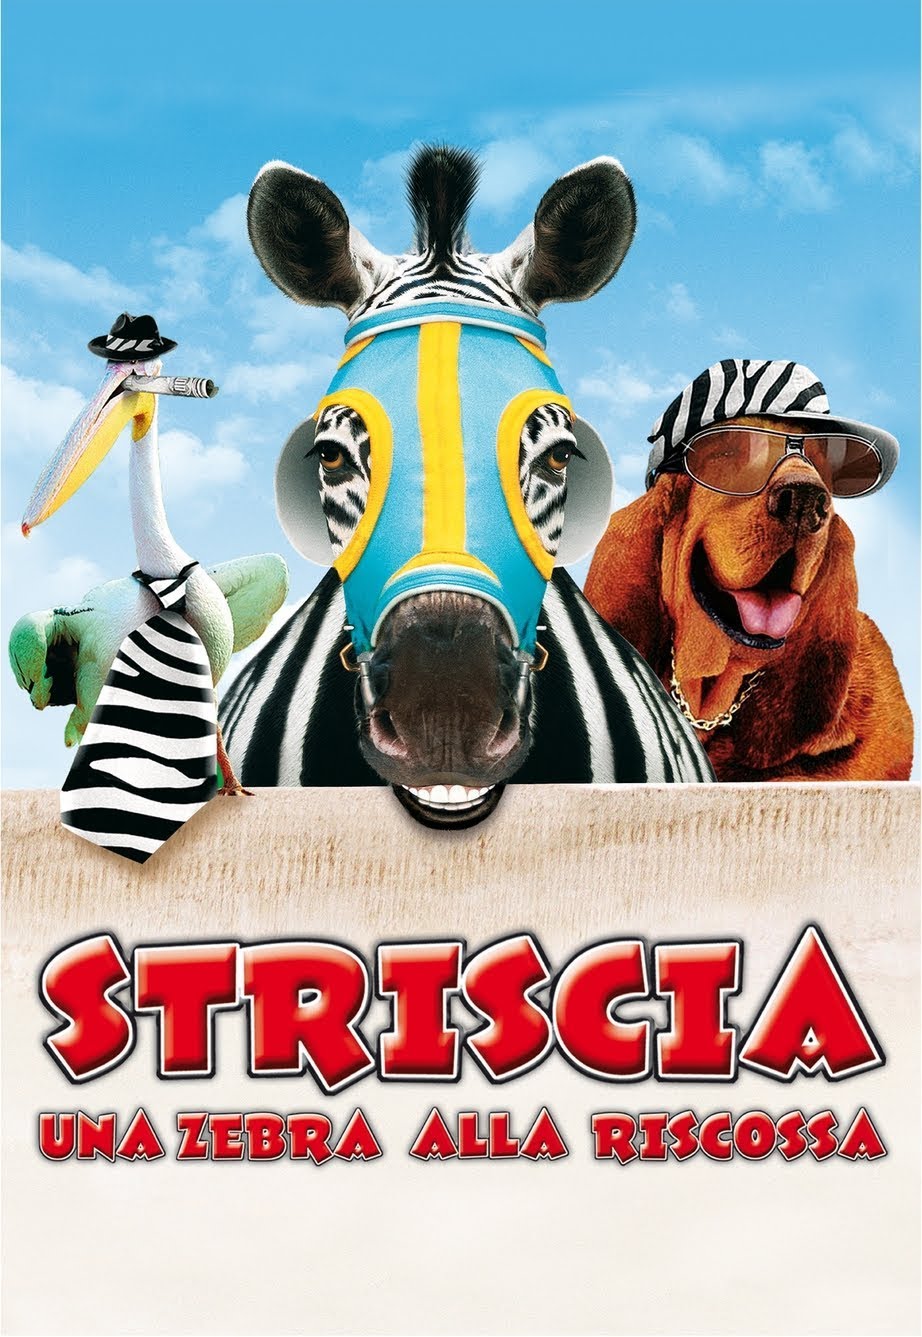 Striscia una zebra alla riscossa [HD] (2005)